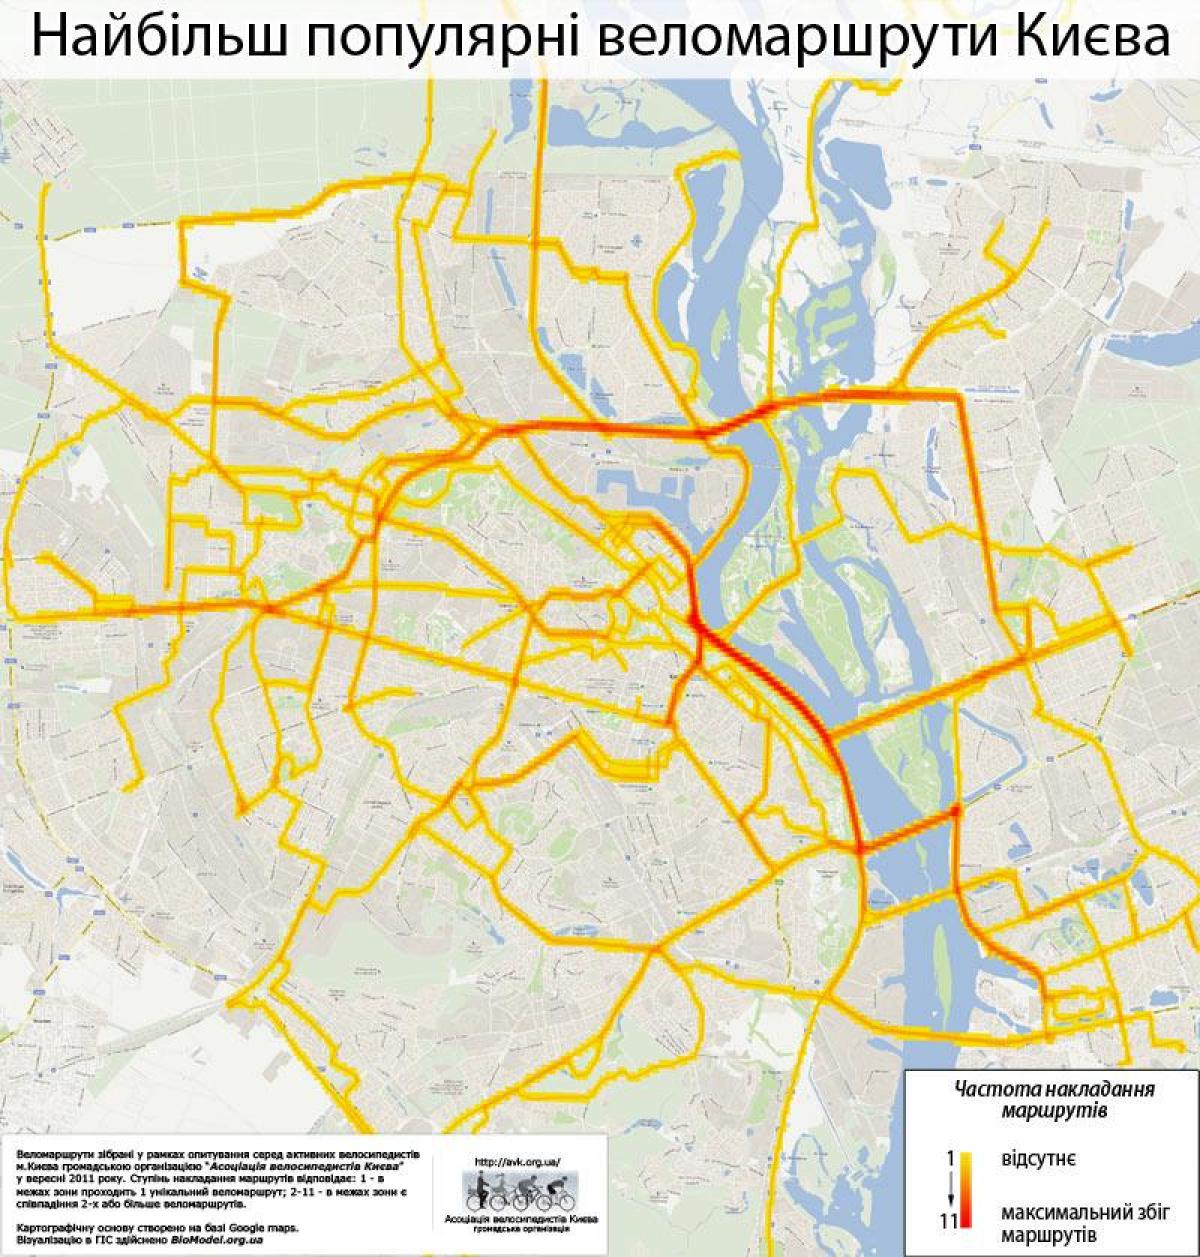 Kiev bike lane map